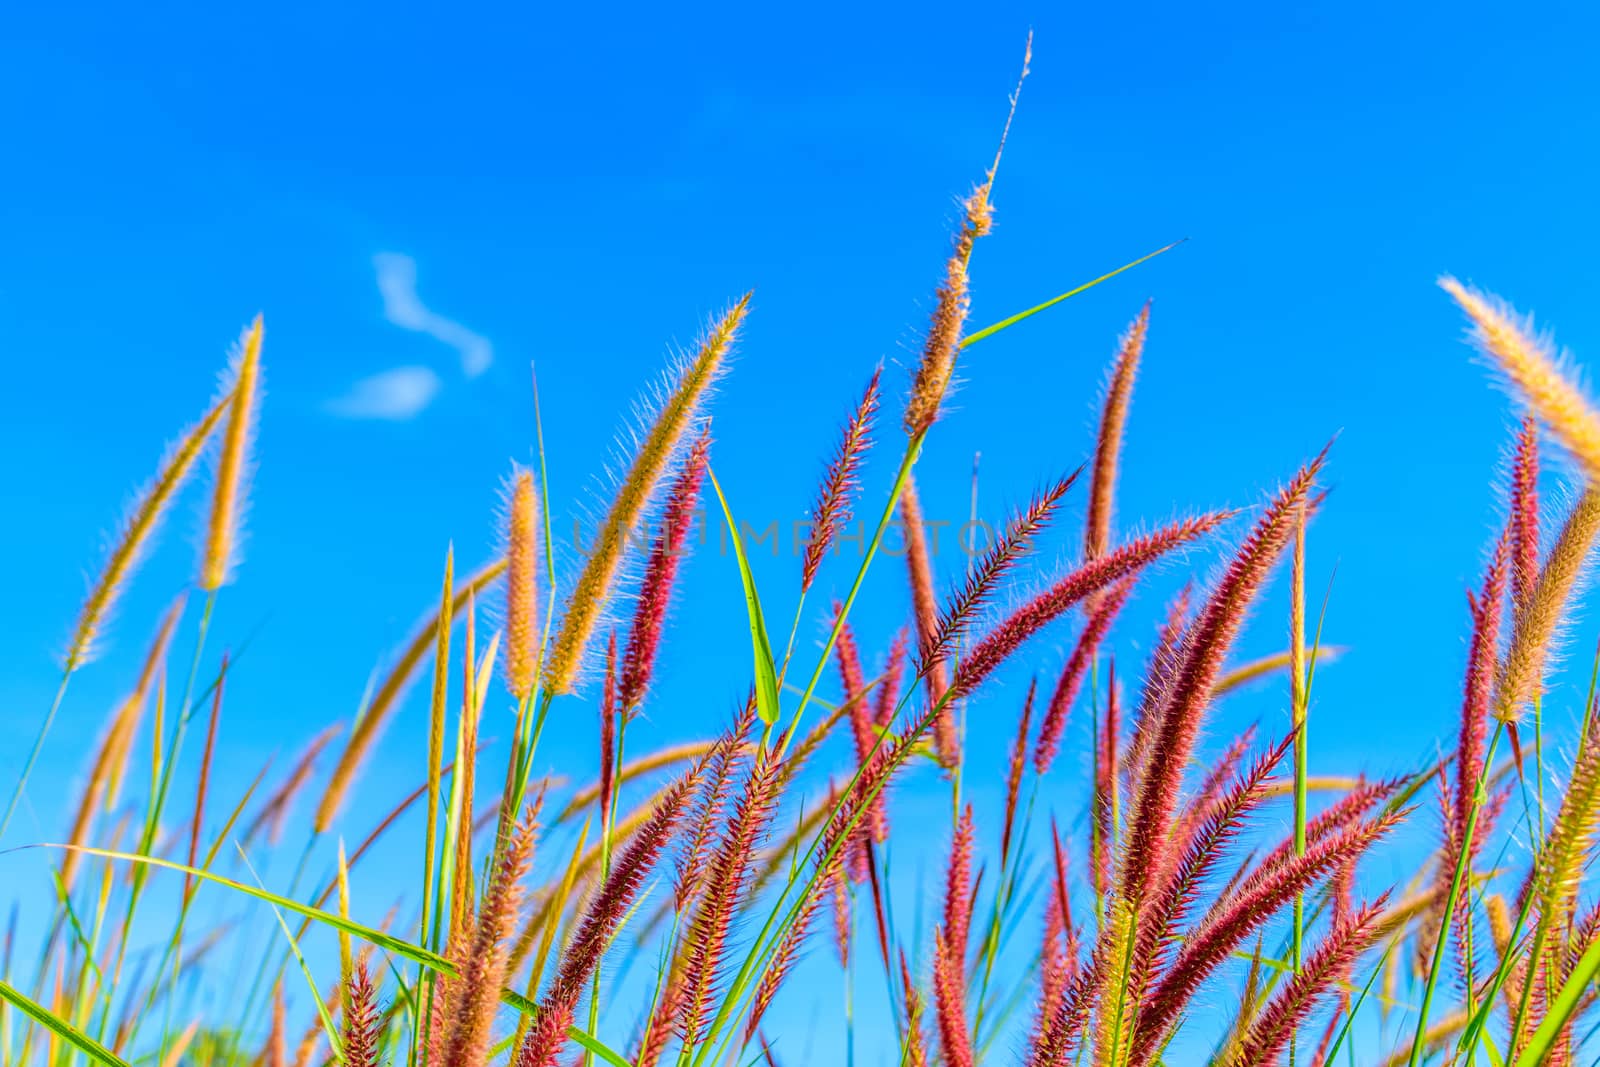 Wild grass flowers in blue sky by naramit